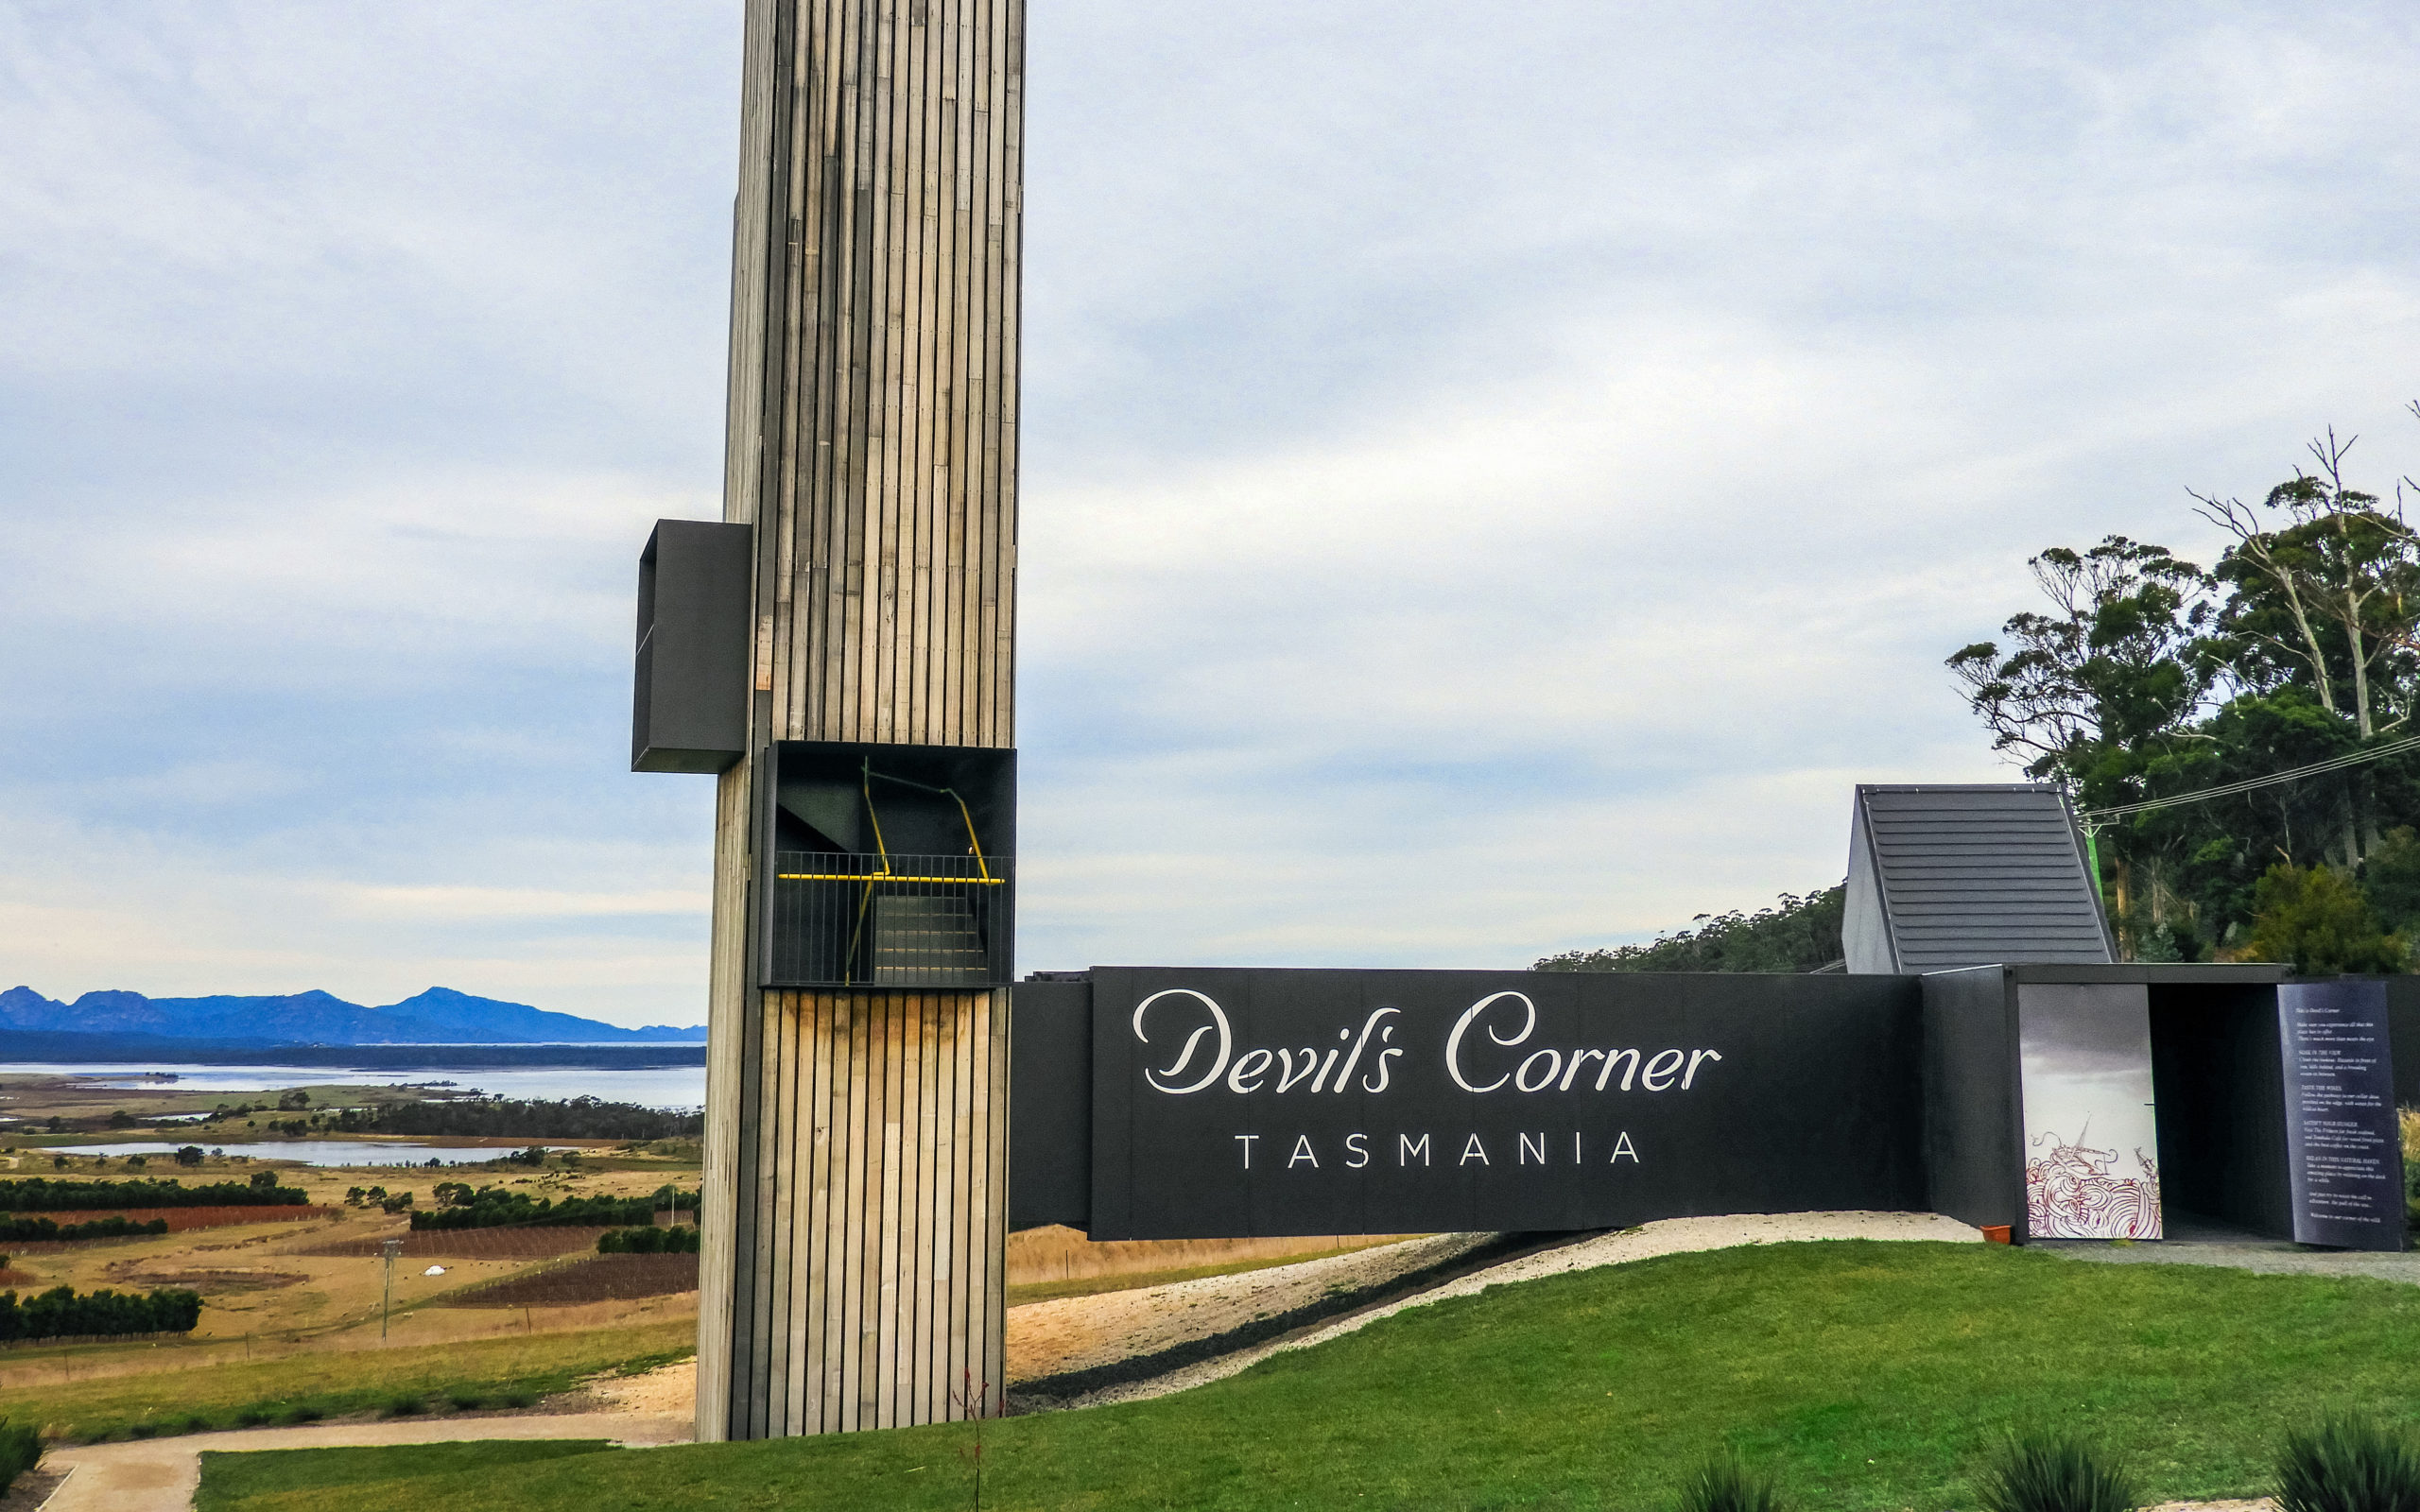 Devil's Corner, Tasmania